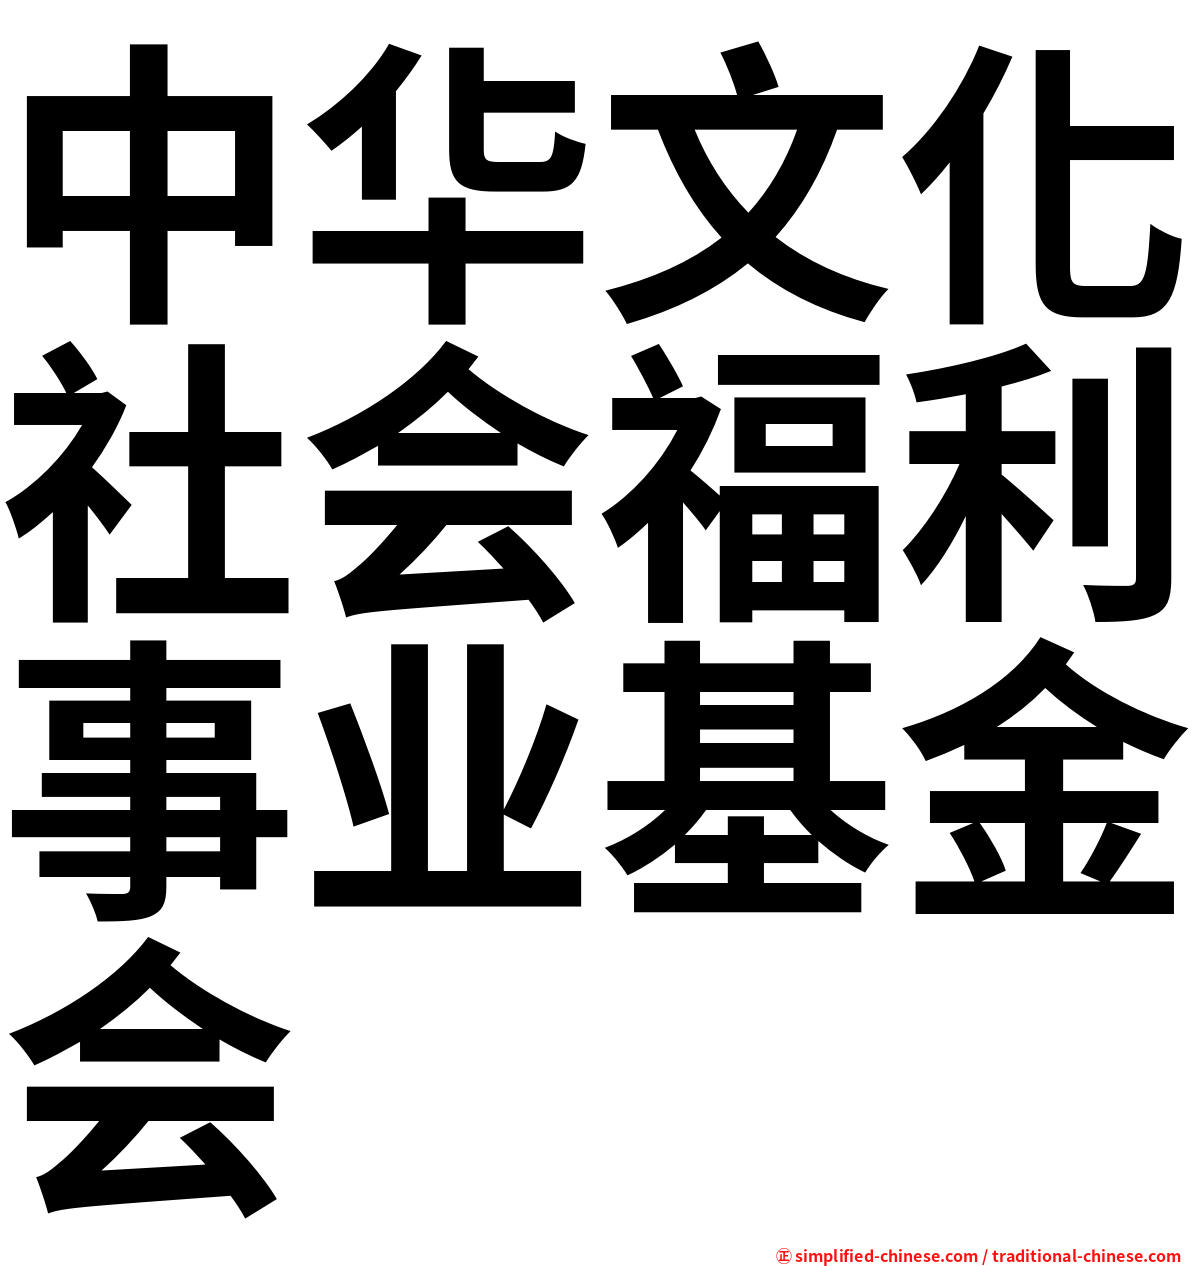 中华文化社会福利事业基金会